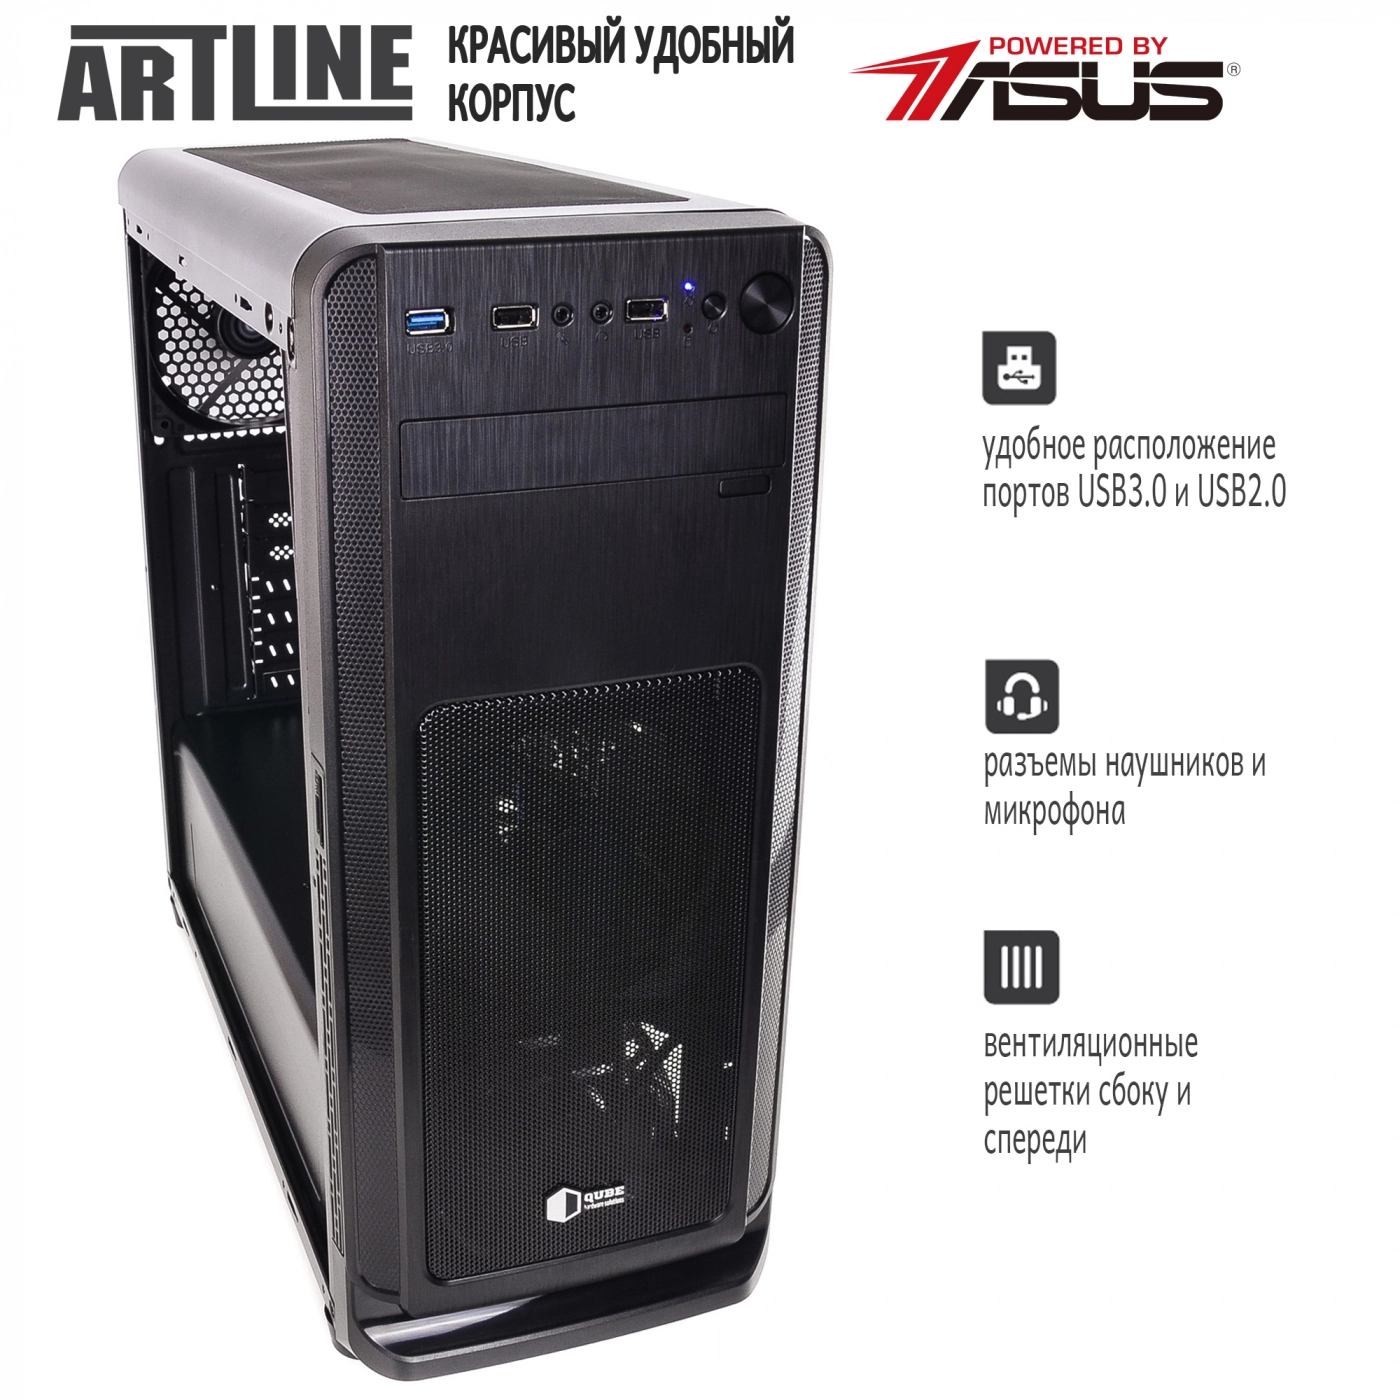 Купить Сервер ARTLINE Business T28v01 - фото 4